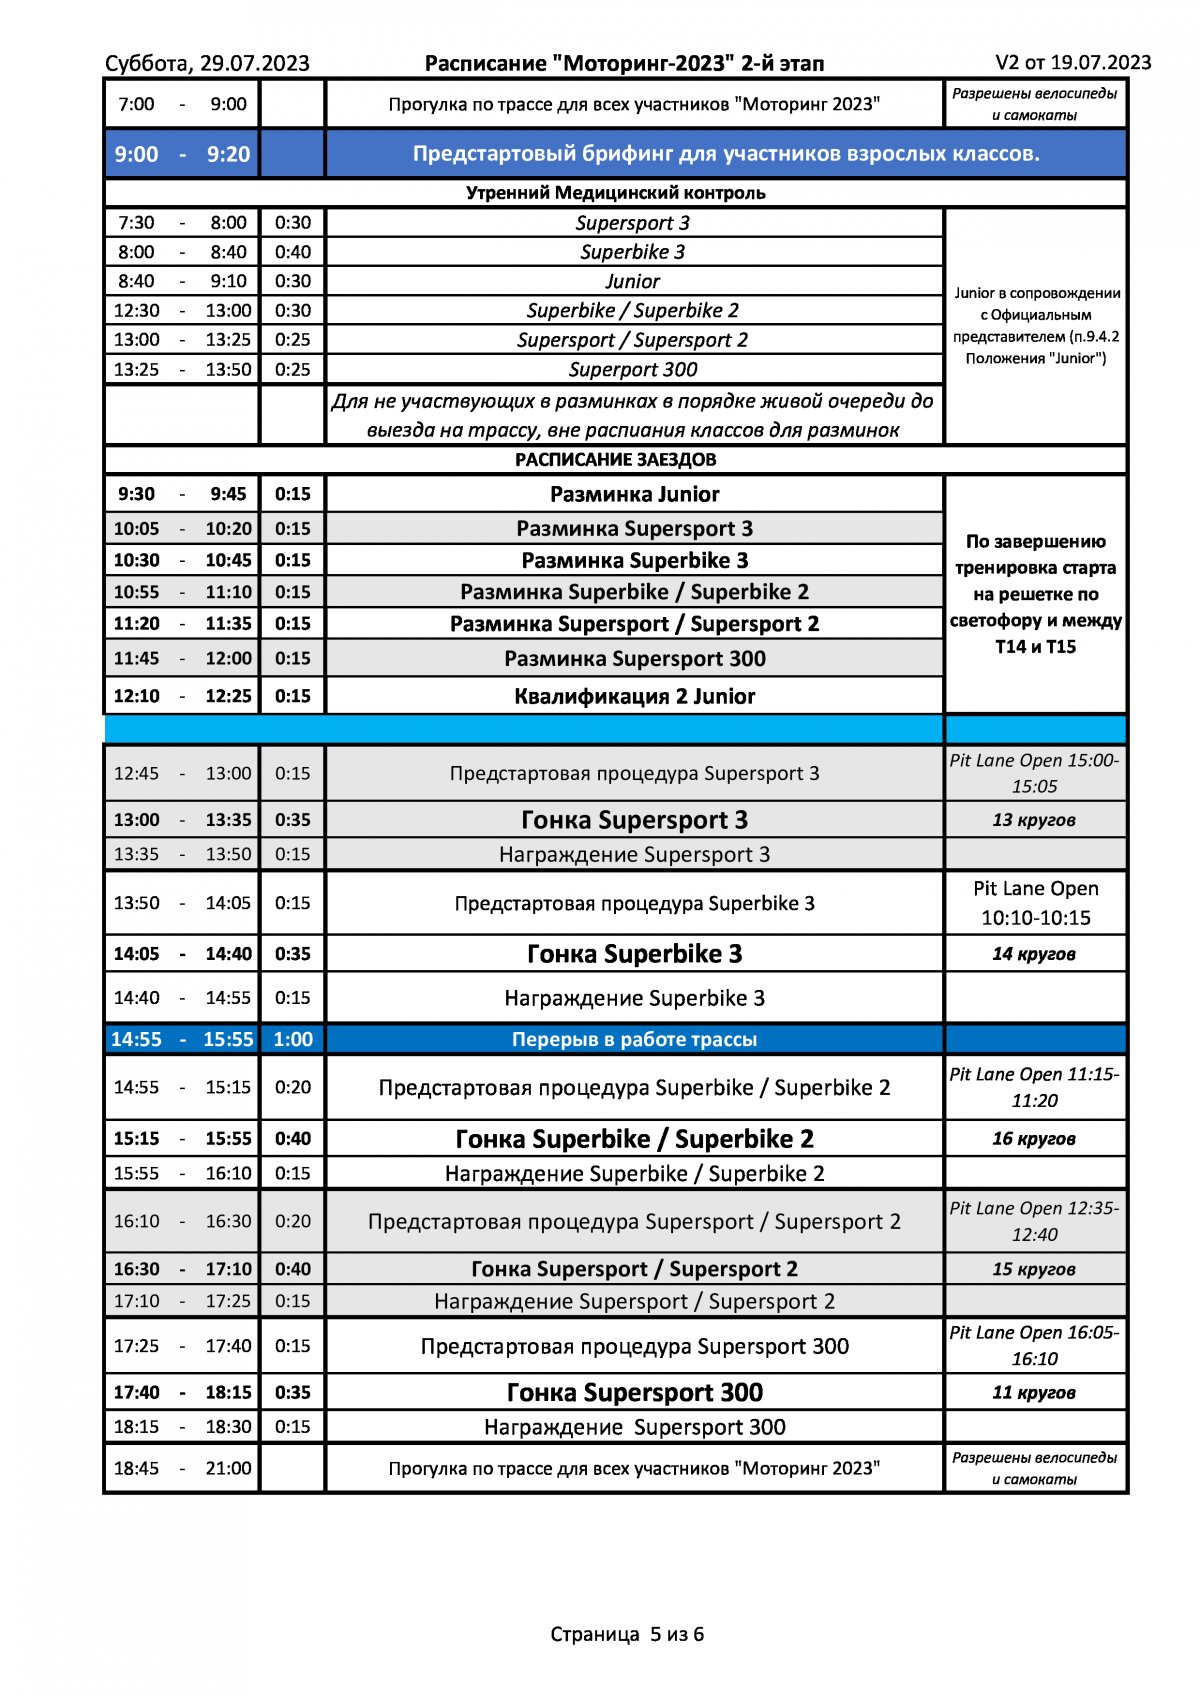 Расписание 2-го этапа Чемпионата России Lavr Motoring (29.07.2023)